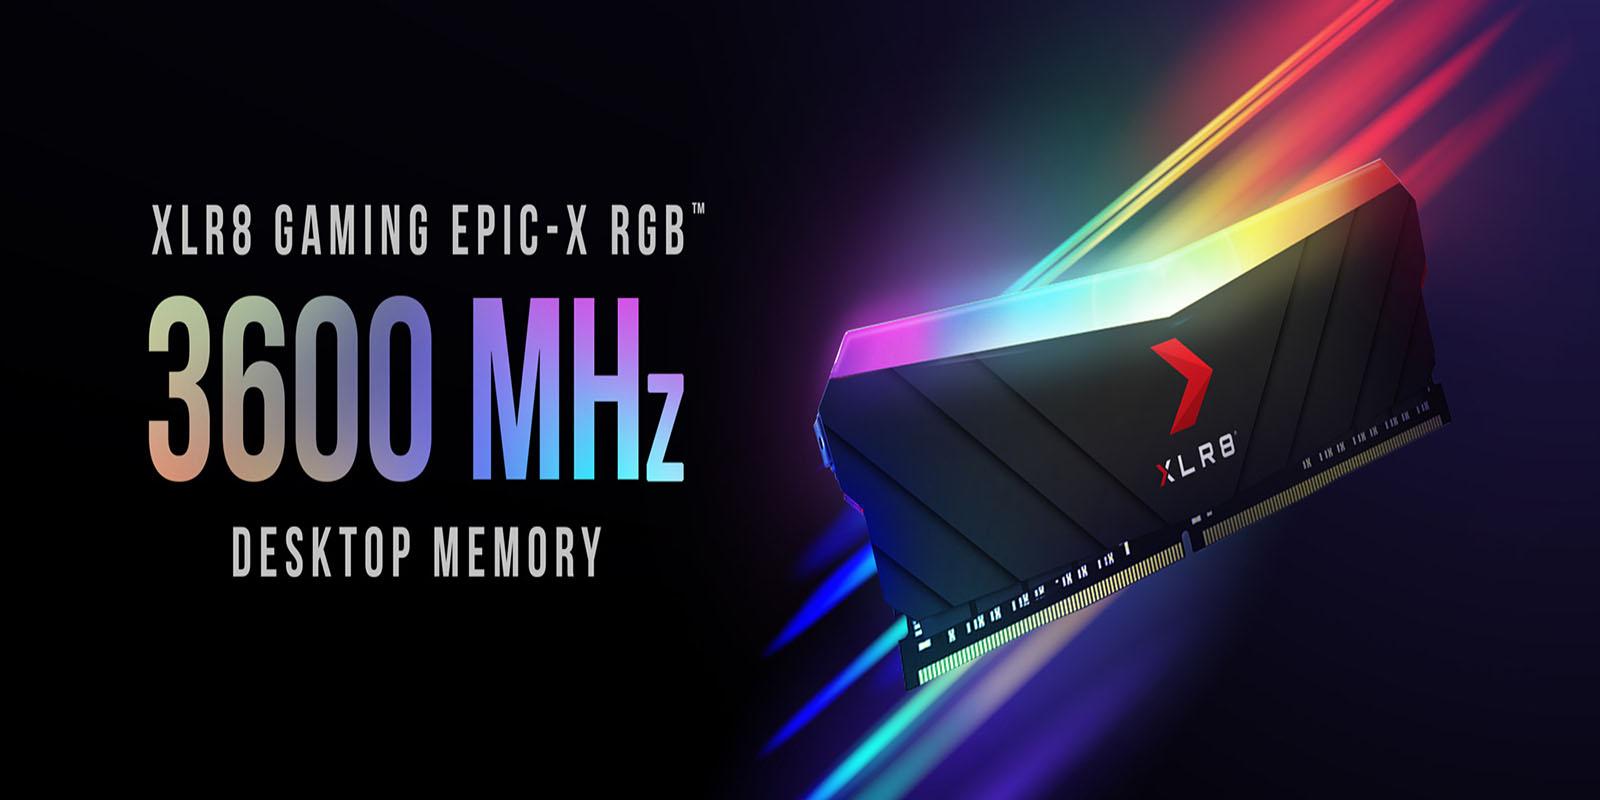 epic-x-rgb-desktop-memory-3600mhz_pr-banner